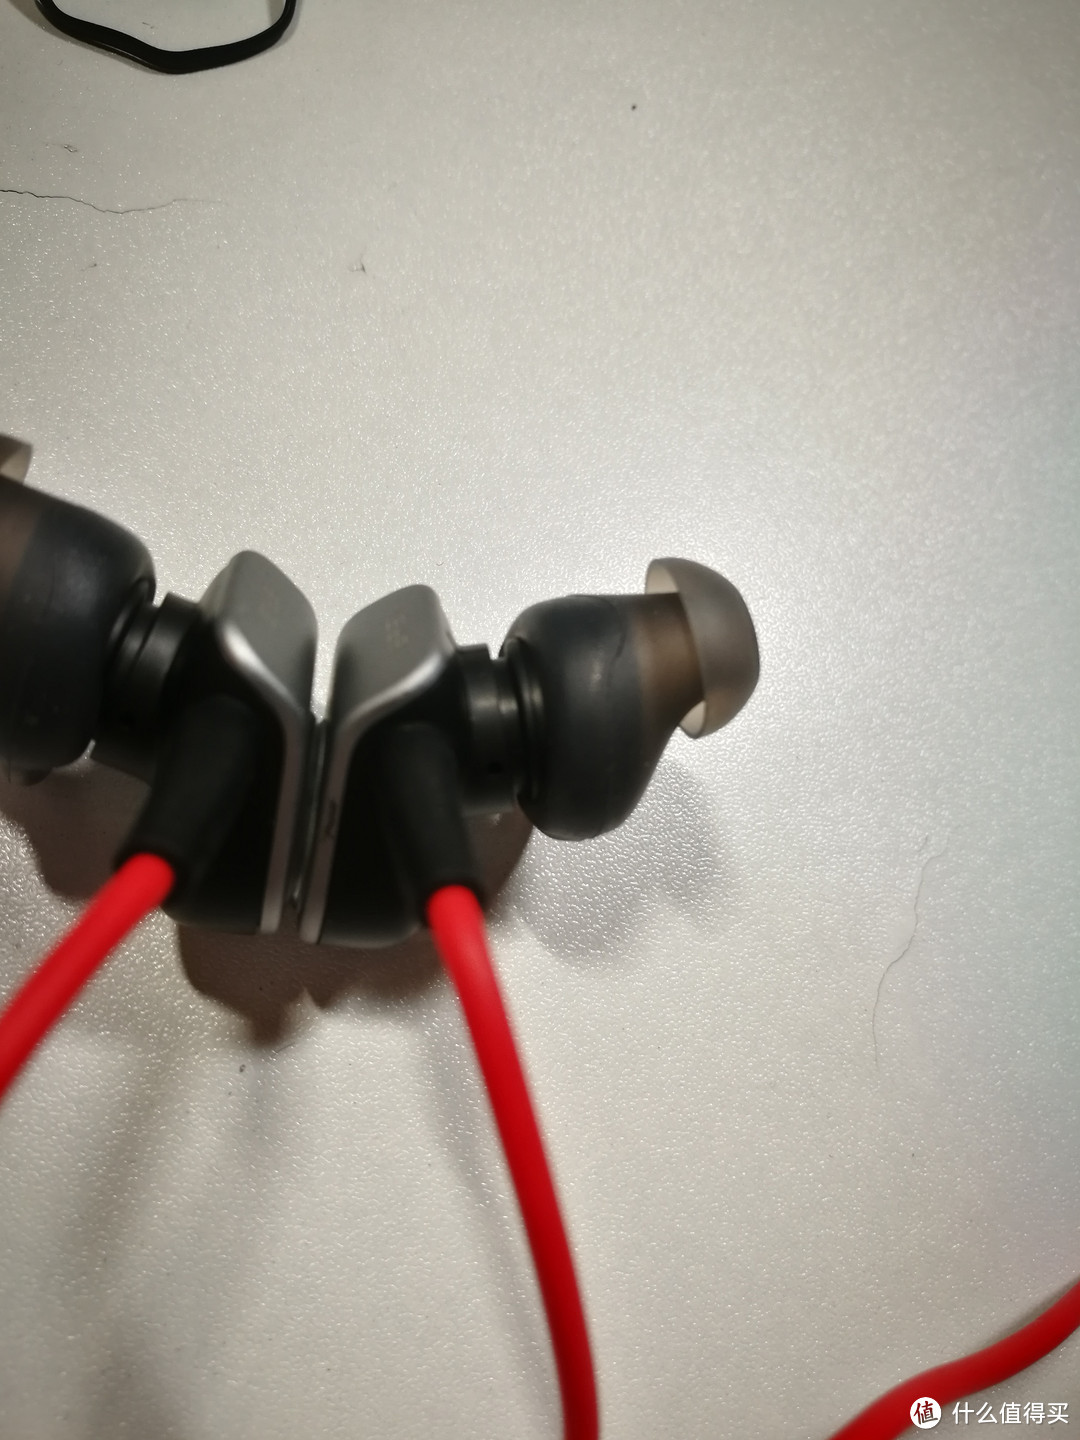 红亮搭配亮骚耳机——MEIZU 魅族 EP51 蓝牙运动耳机 使用体验